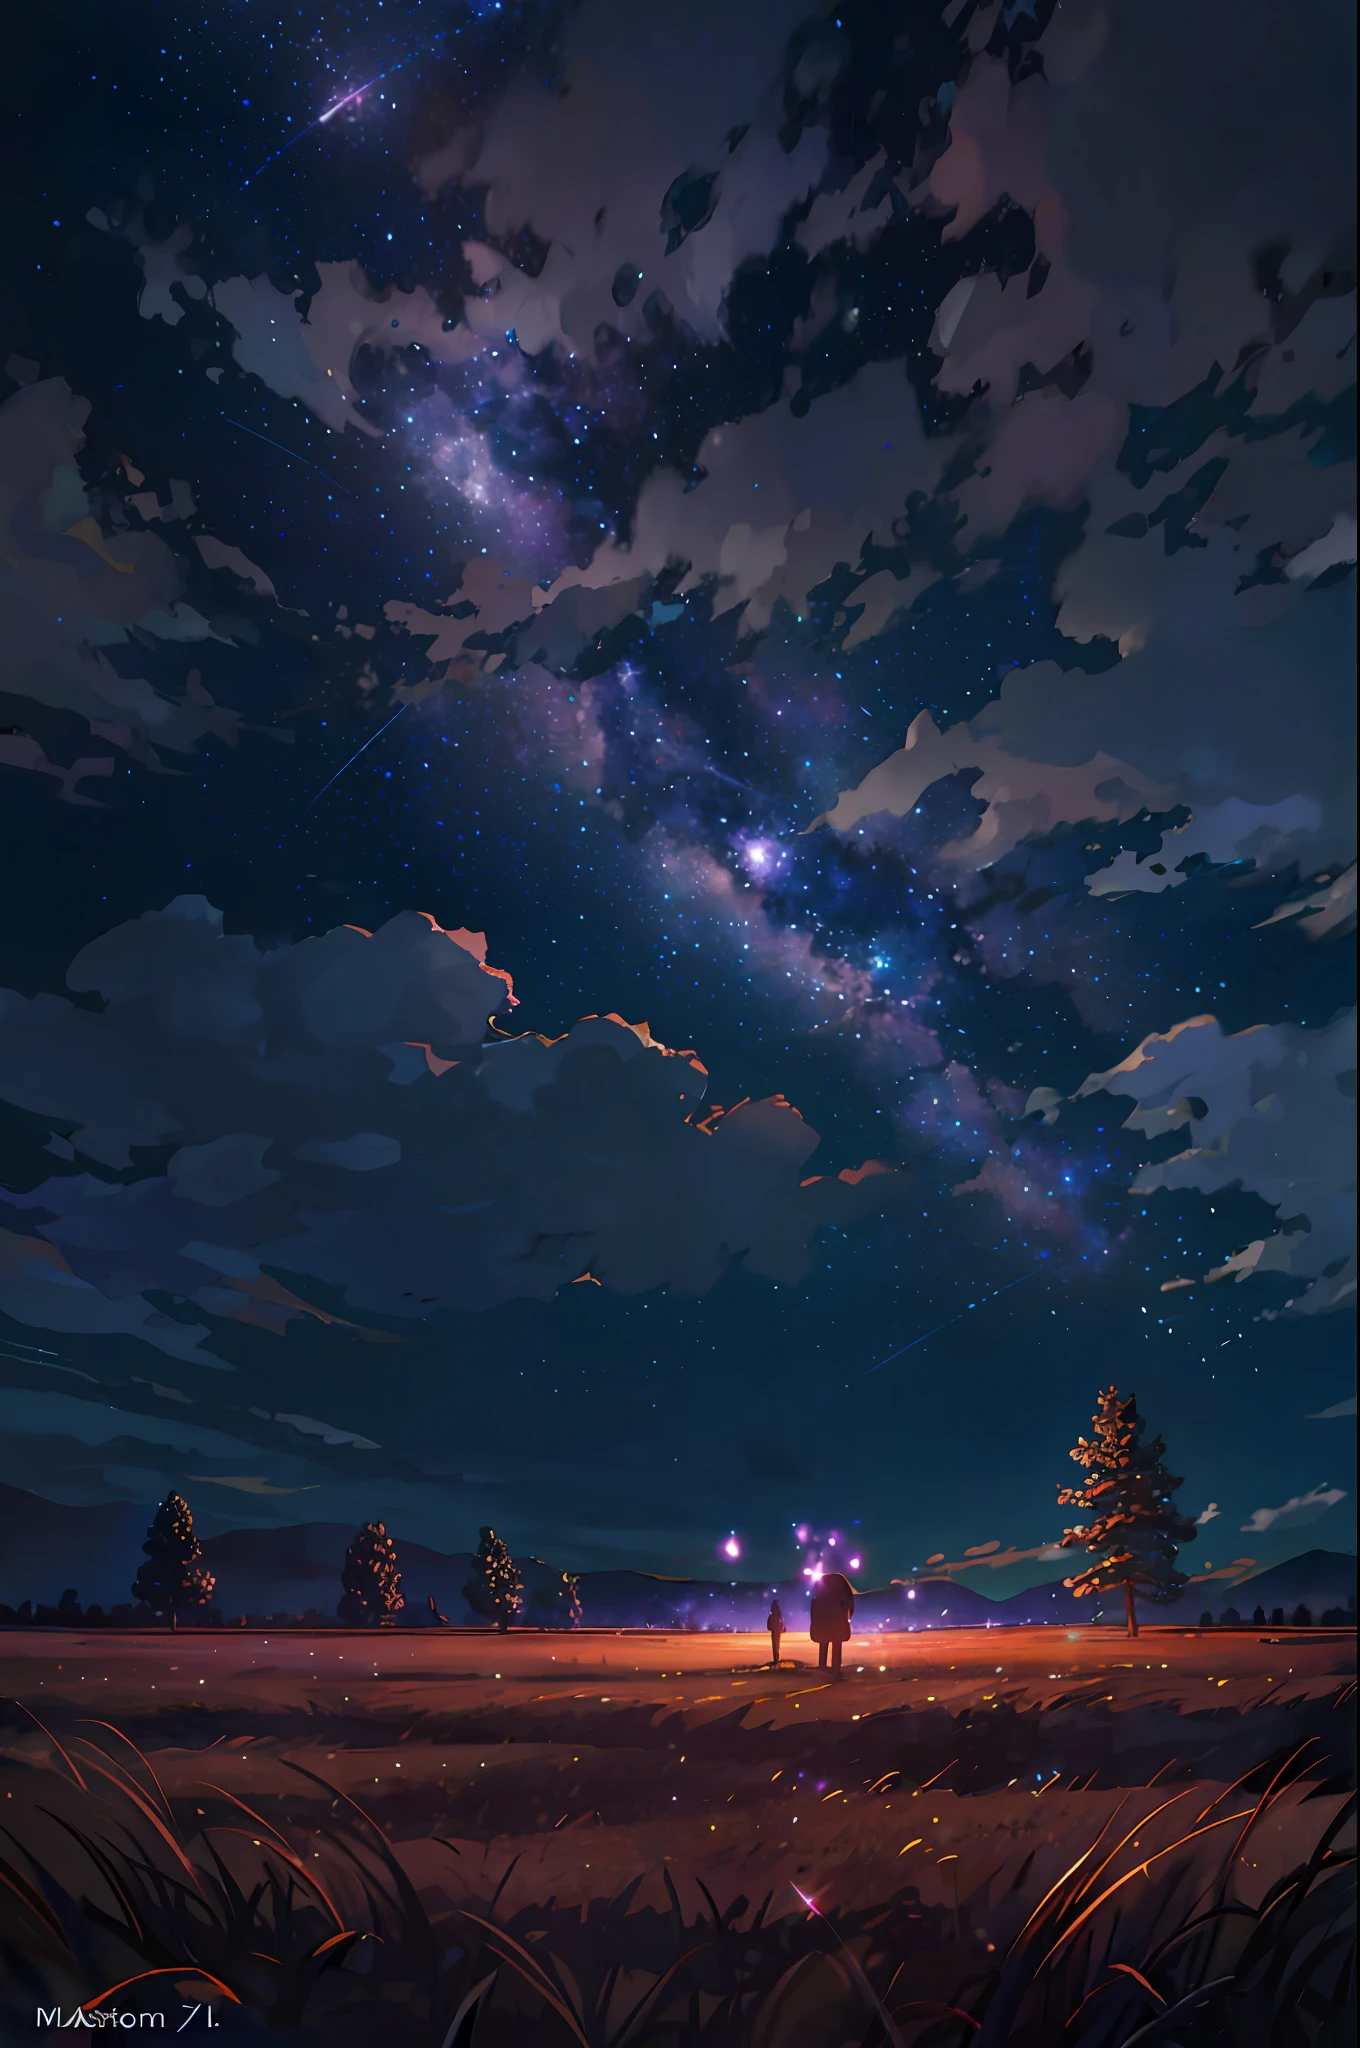 두 그루의 나무와 들판이 있는 별이 빛나는 밤하늘, 끝없는 우주를 배경으로, 우주의 하늘. By Makoto Shinkai, 별이 빛나는 하늘 8 k, 고요한 밤. 디지털 일러스트레이션, 애니메이션 배경 미술, 4K 애니메이션 벽지, 아름다운 애니메이션 장면, 별이 빛나는 하늘, moonlit 별이 빛나는 하늘 environment, 애니메이션 아트 벽지 8k, 애니메이션 아트 벽지 4k